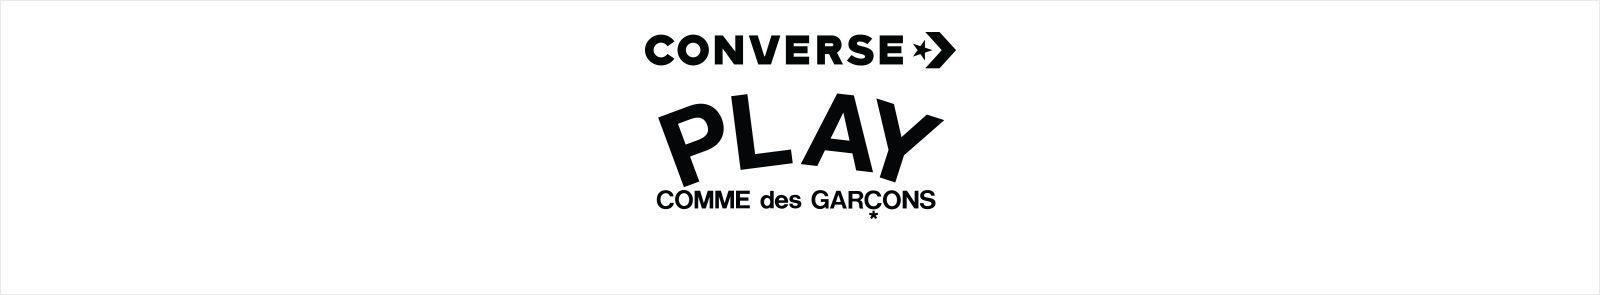 Comme Des Garcons Logo - CDG Converse | COMME des GARÇONS Play. Converse.com